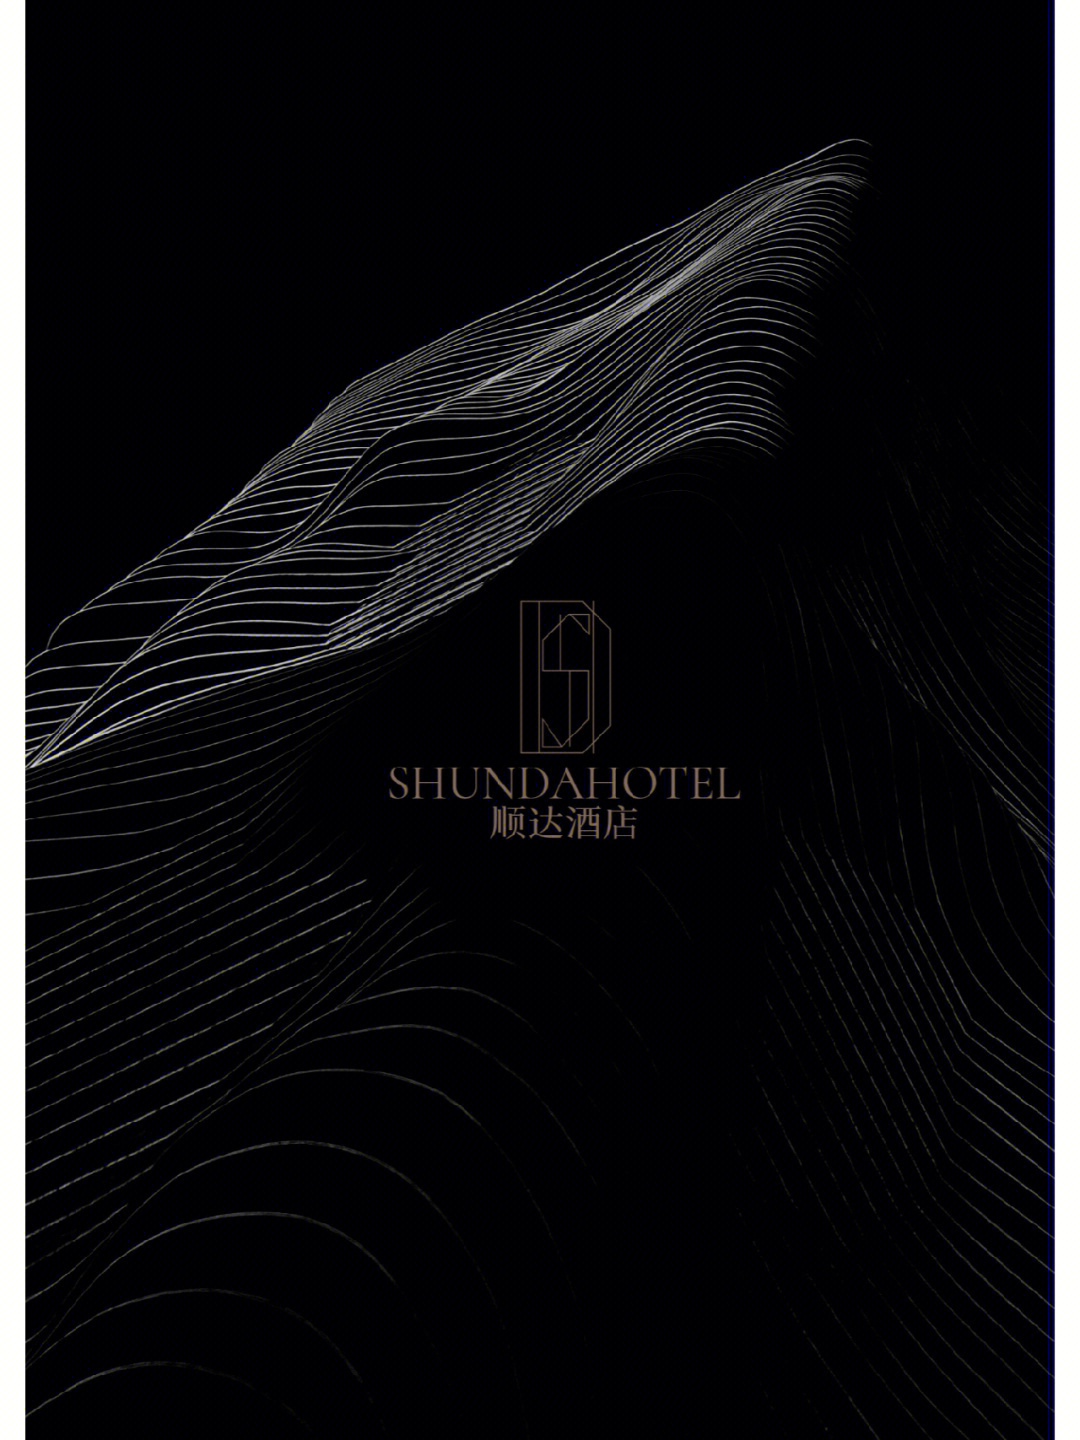 一家轻奢酒店logo设计